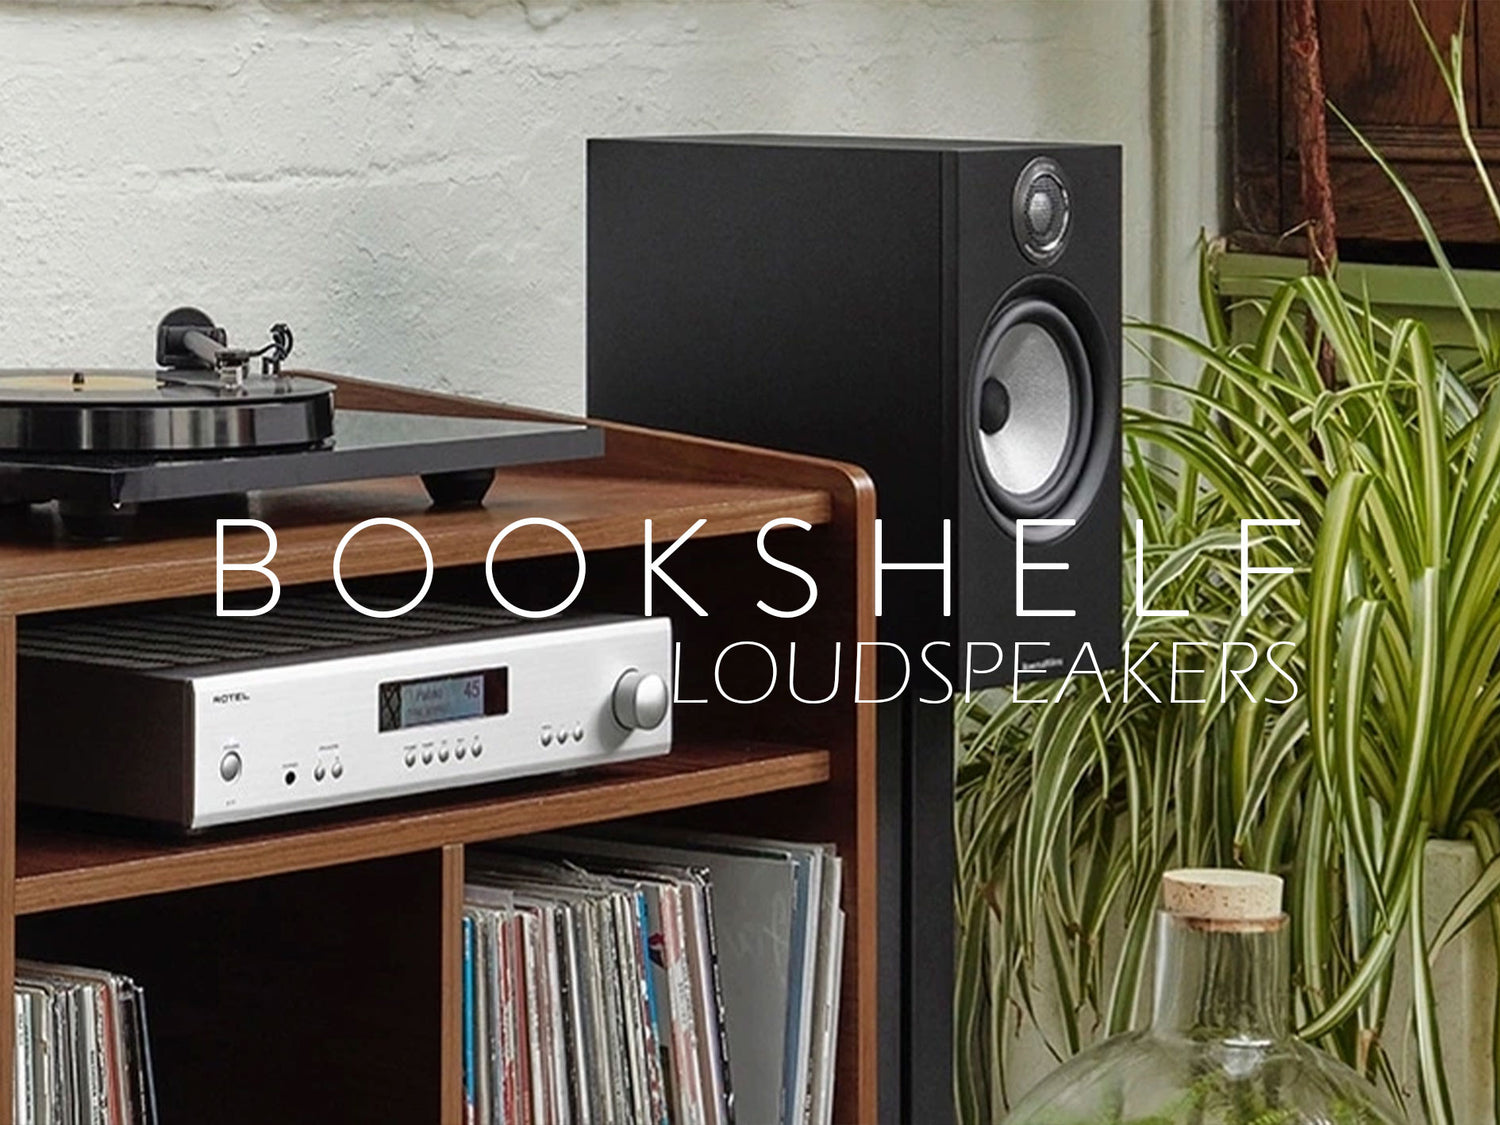 Bookshelf Loudspeakers